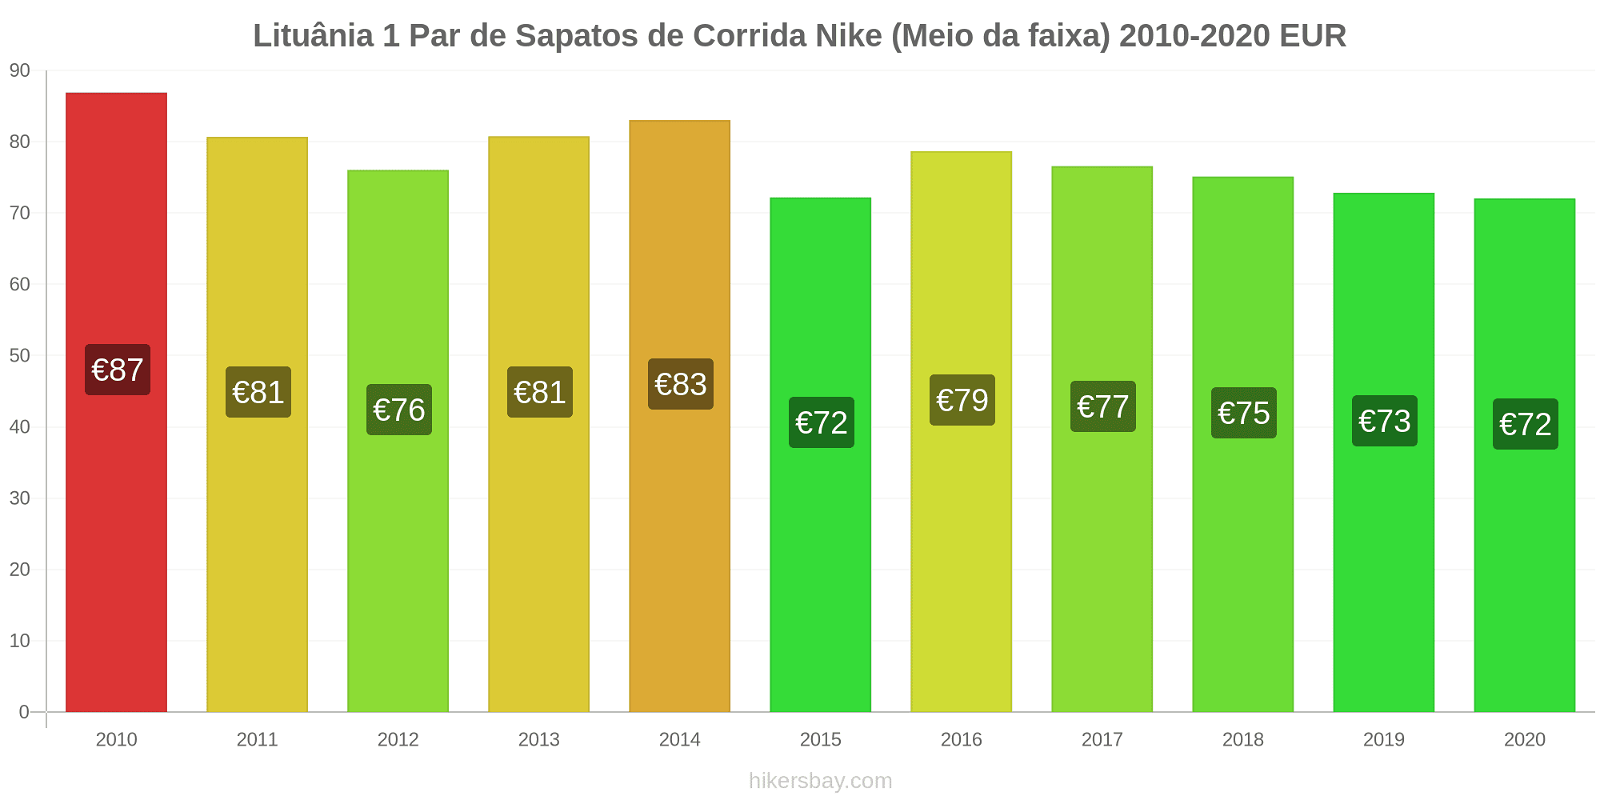 Lituânia variação de preço 1 par de tênis Nike (mid-range) hikersbay.com